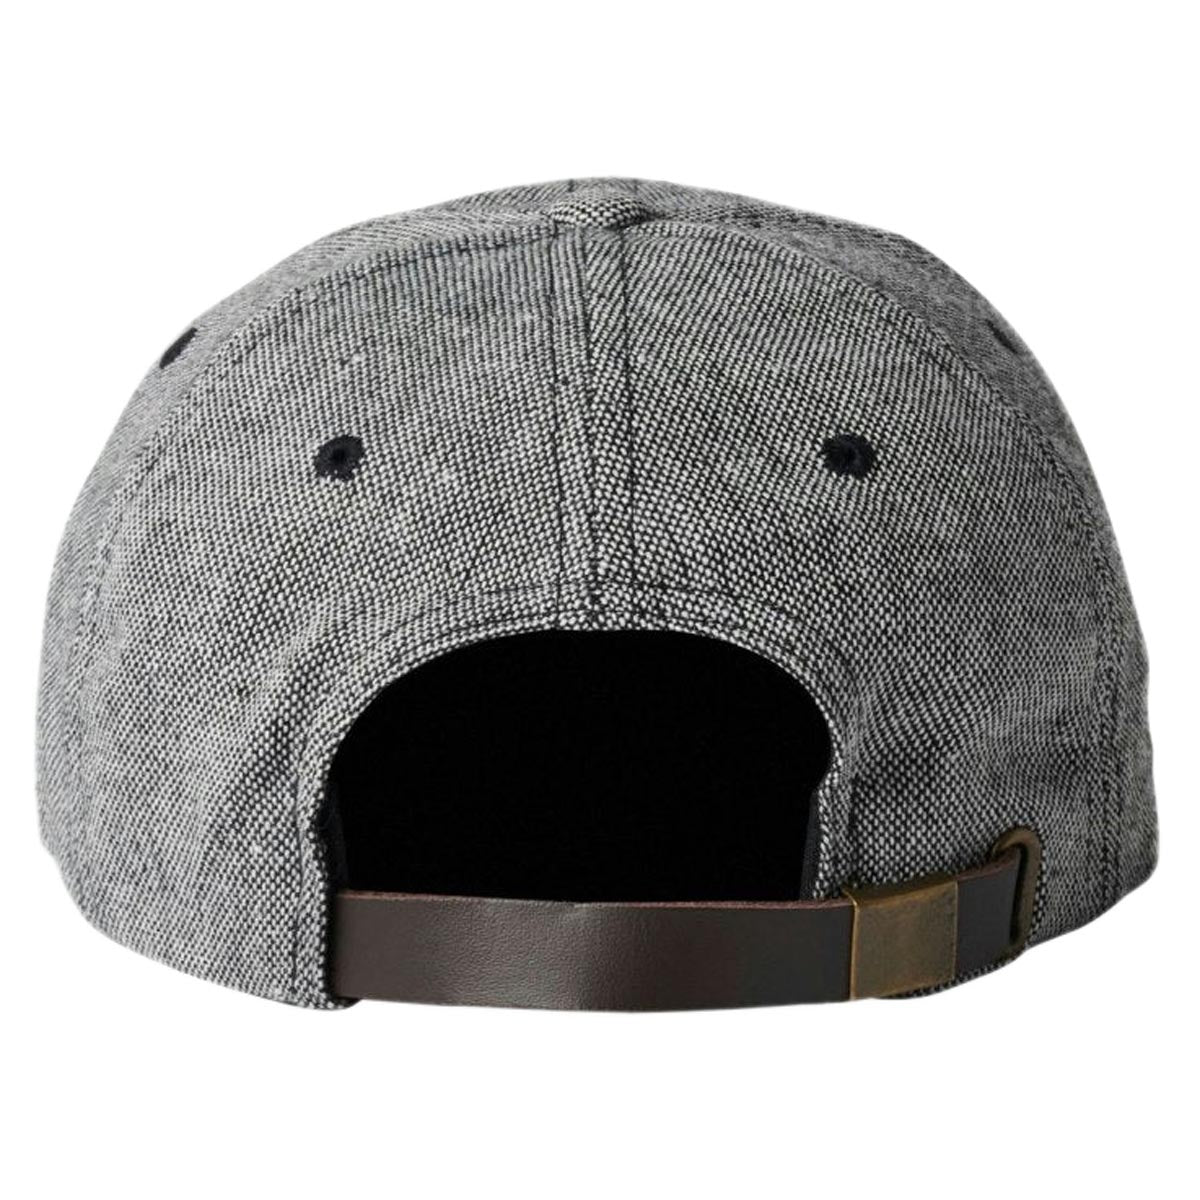 Brixton Parsons Lp Hat - Grey/Black image 2